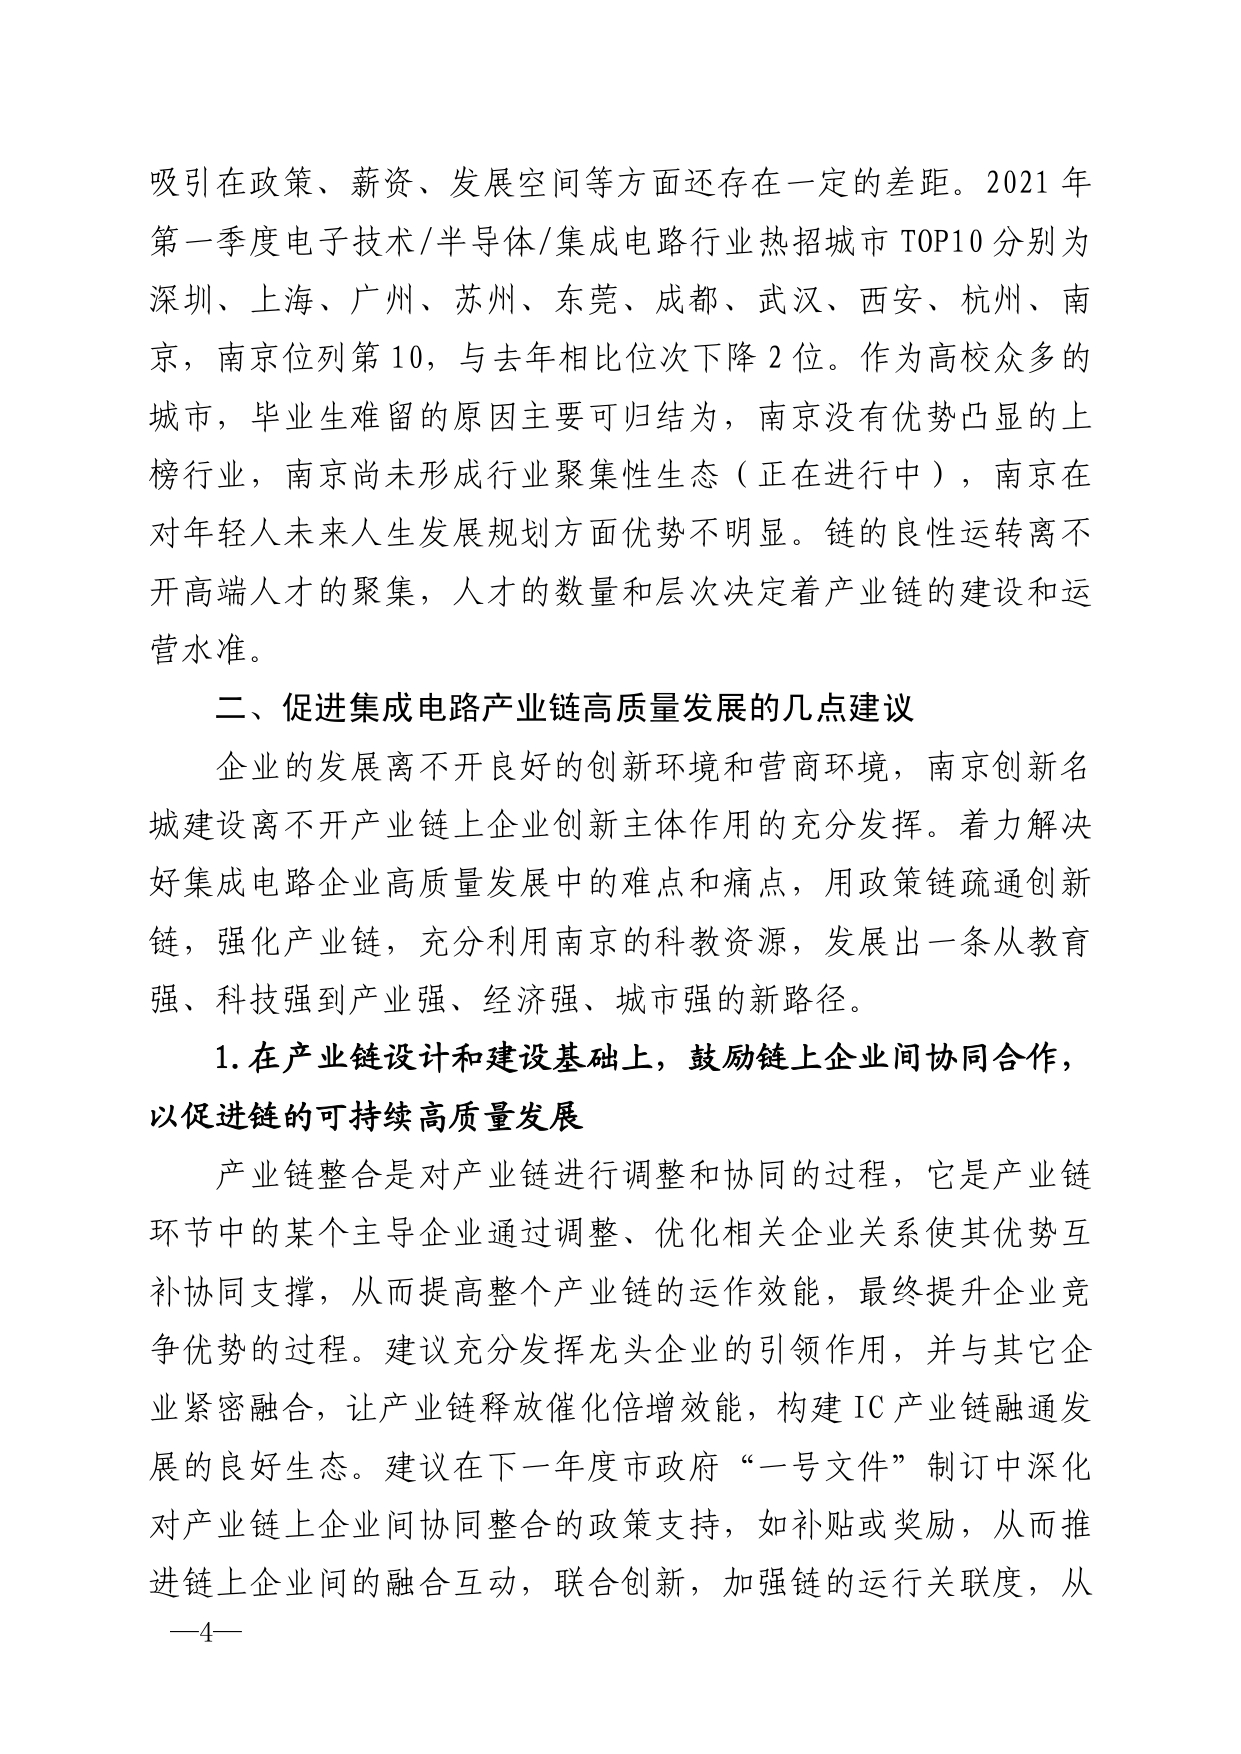 2021年第5期（关于南京市集成电路产业链高质量发展的建议）_page-0004.jpg